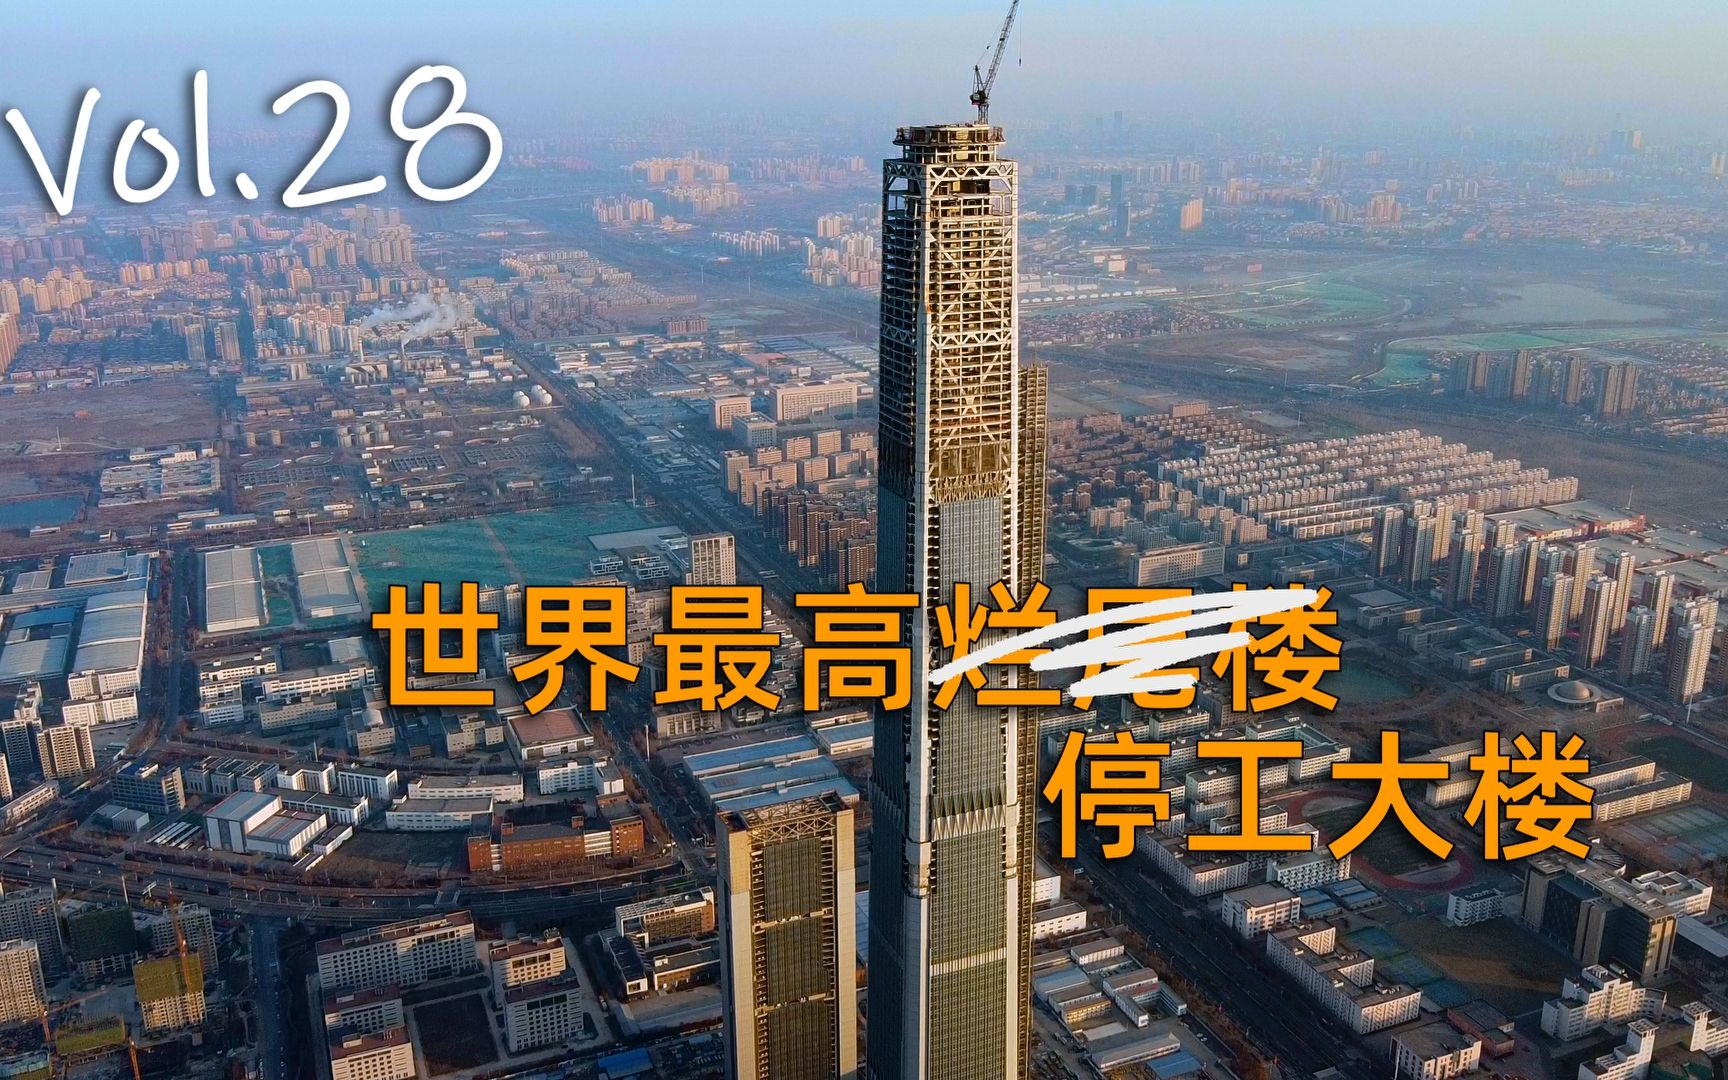 597米,世界最高烂尾楼——天津高银117